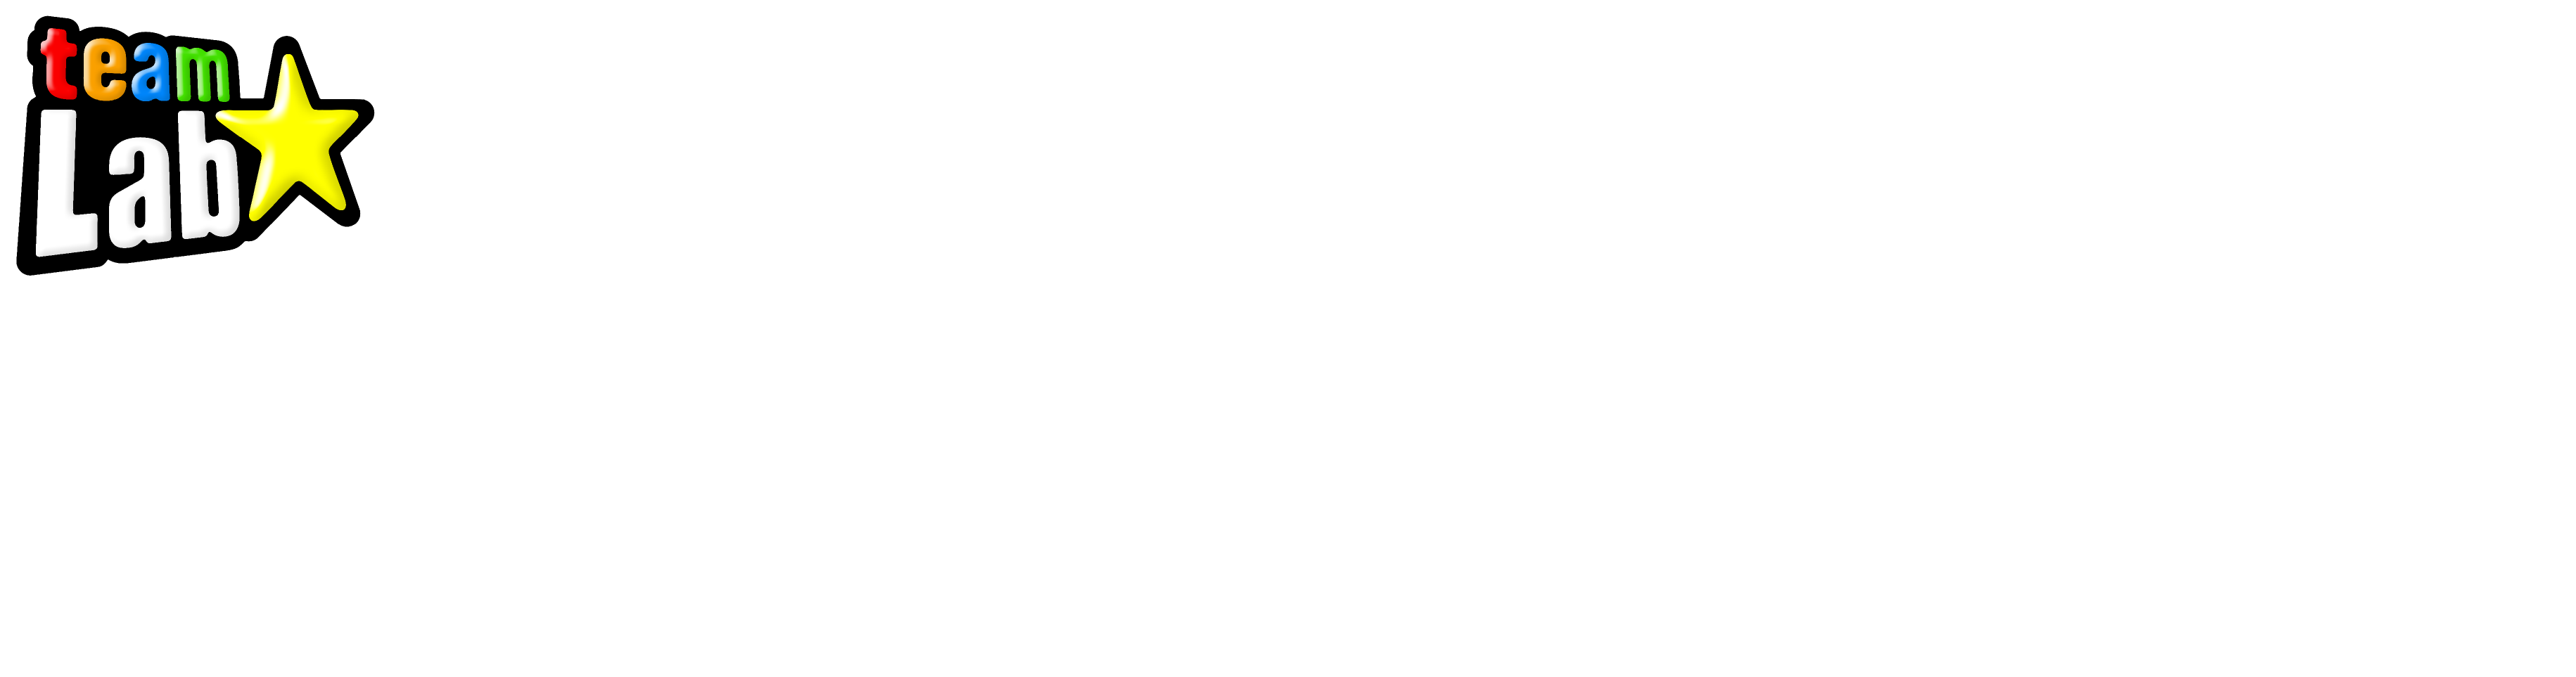 TeamLab Forest Fukuoka – SBI SECURITIES